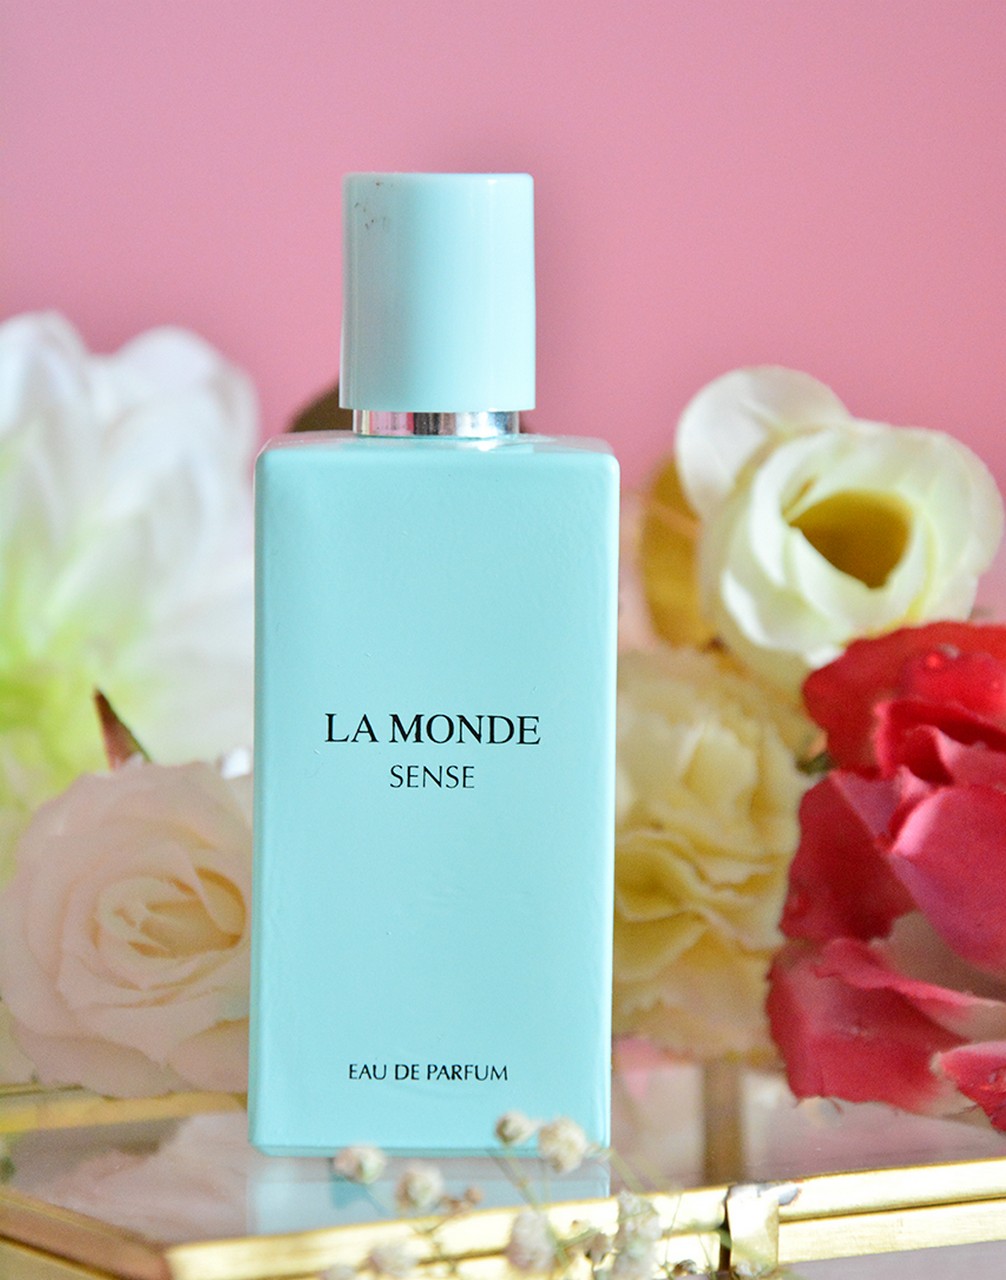 La Monde Sense Kadın Parfümü Nerede Satılıyor?